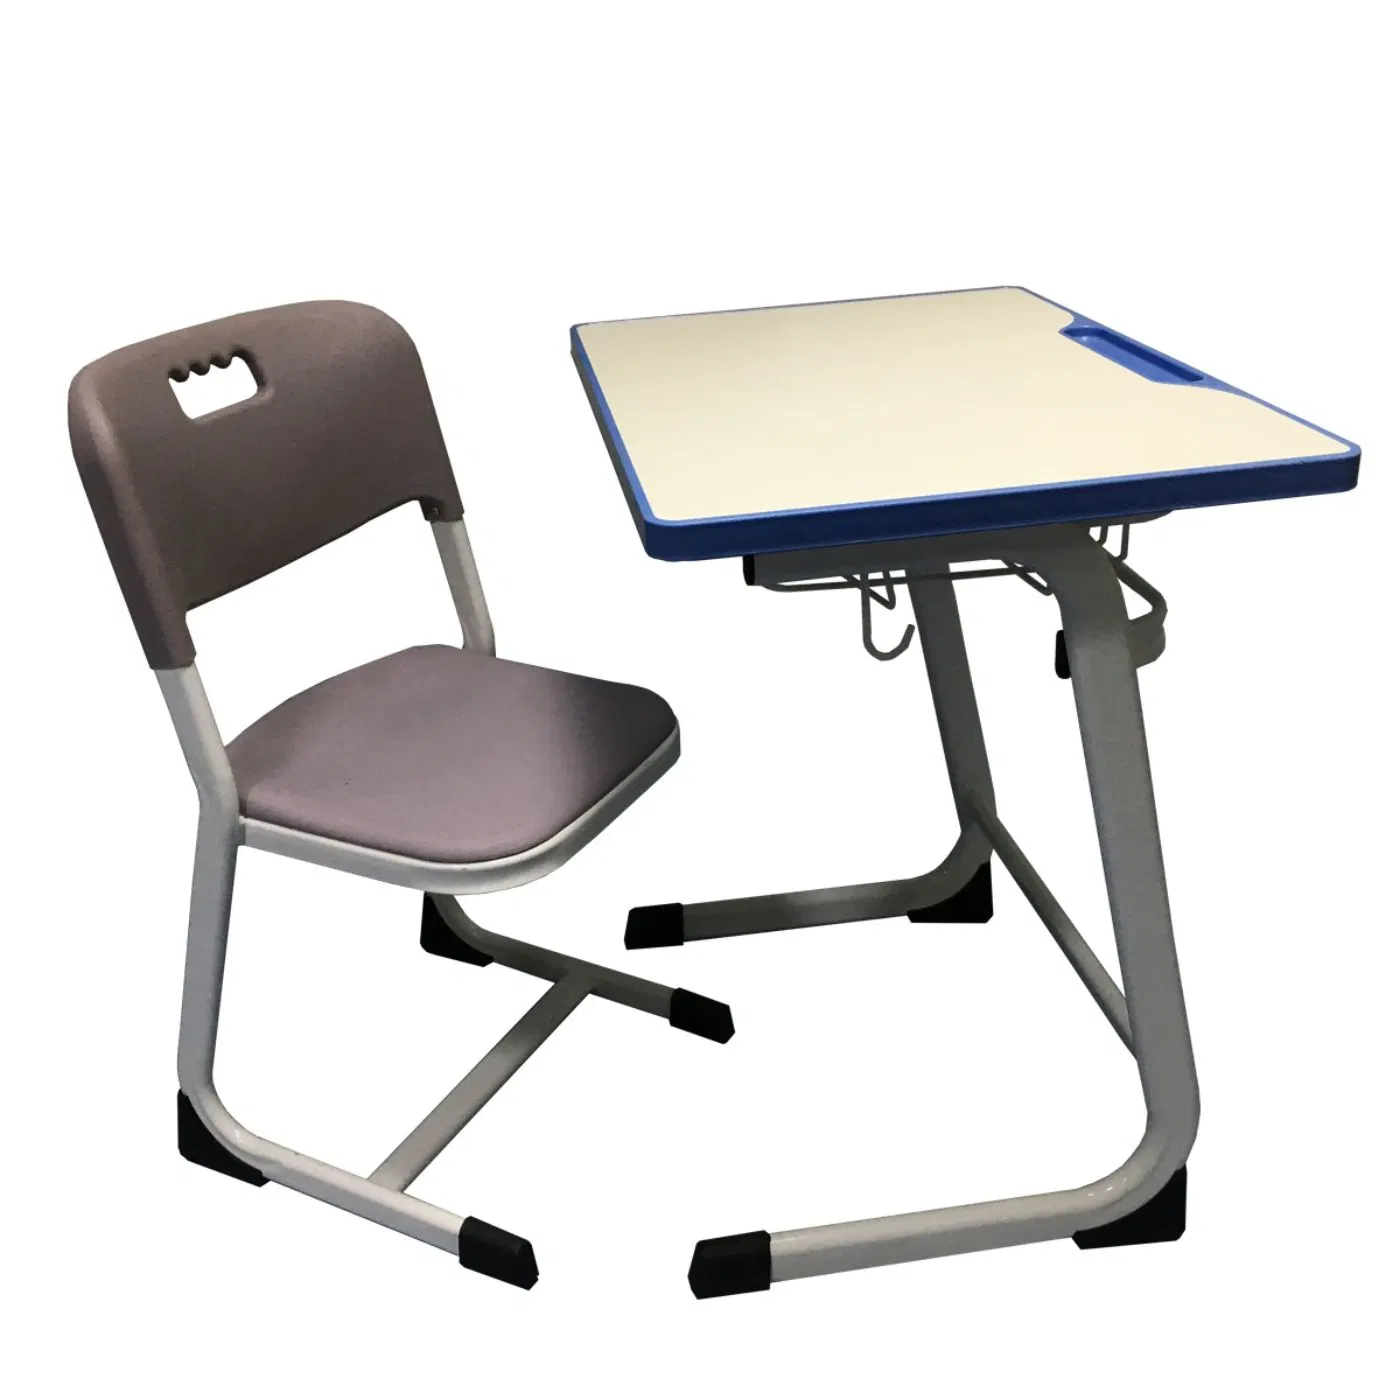 Günstige Schule Student Kunststoff Schreibtisch Tisch und Stuhl Möbel